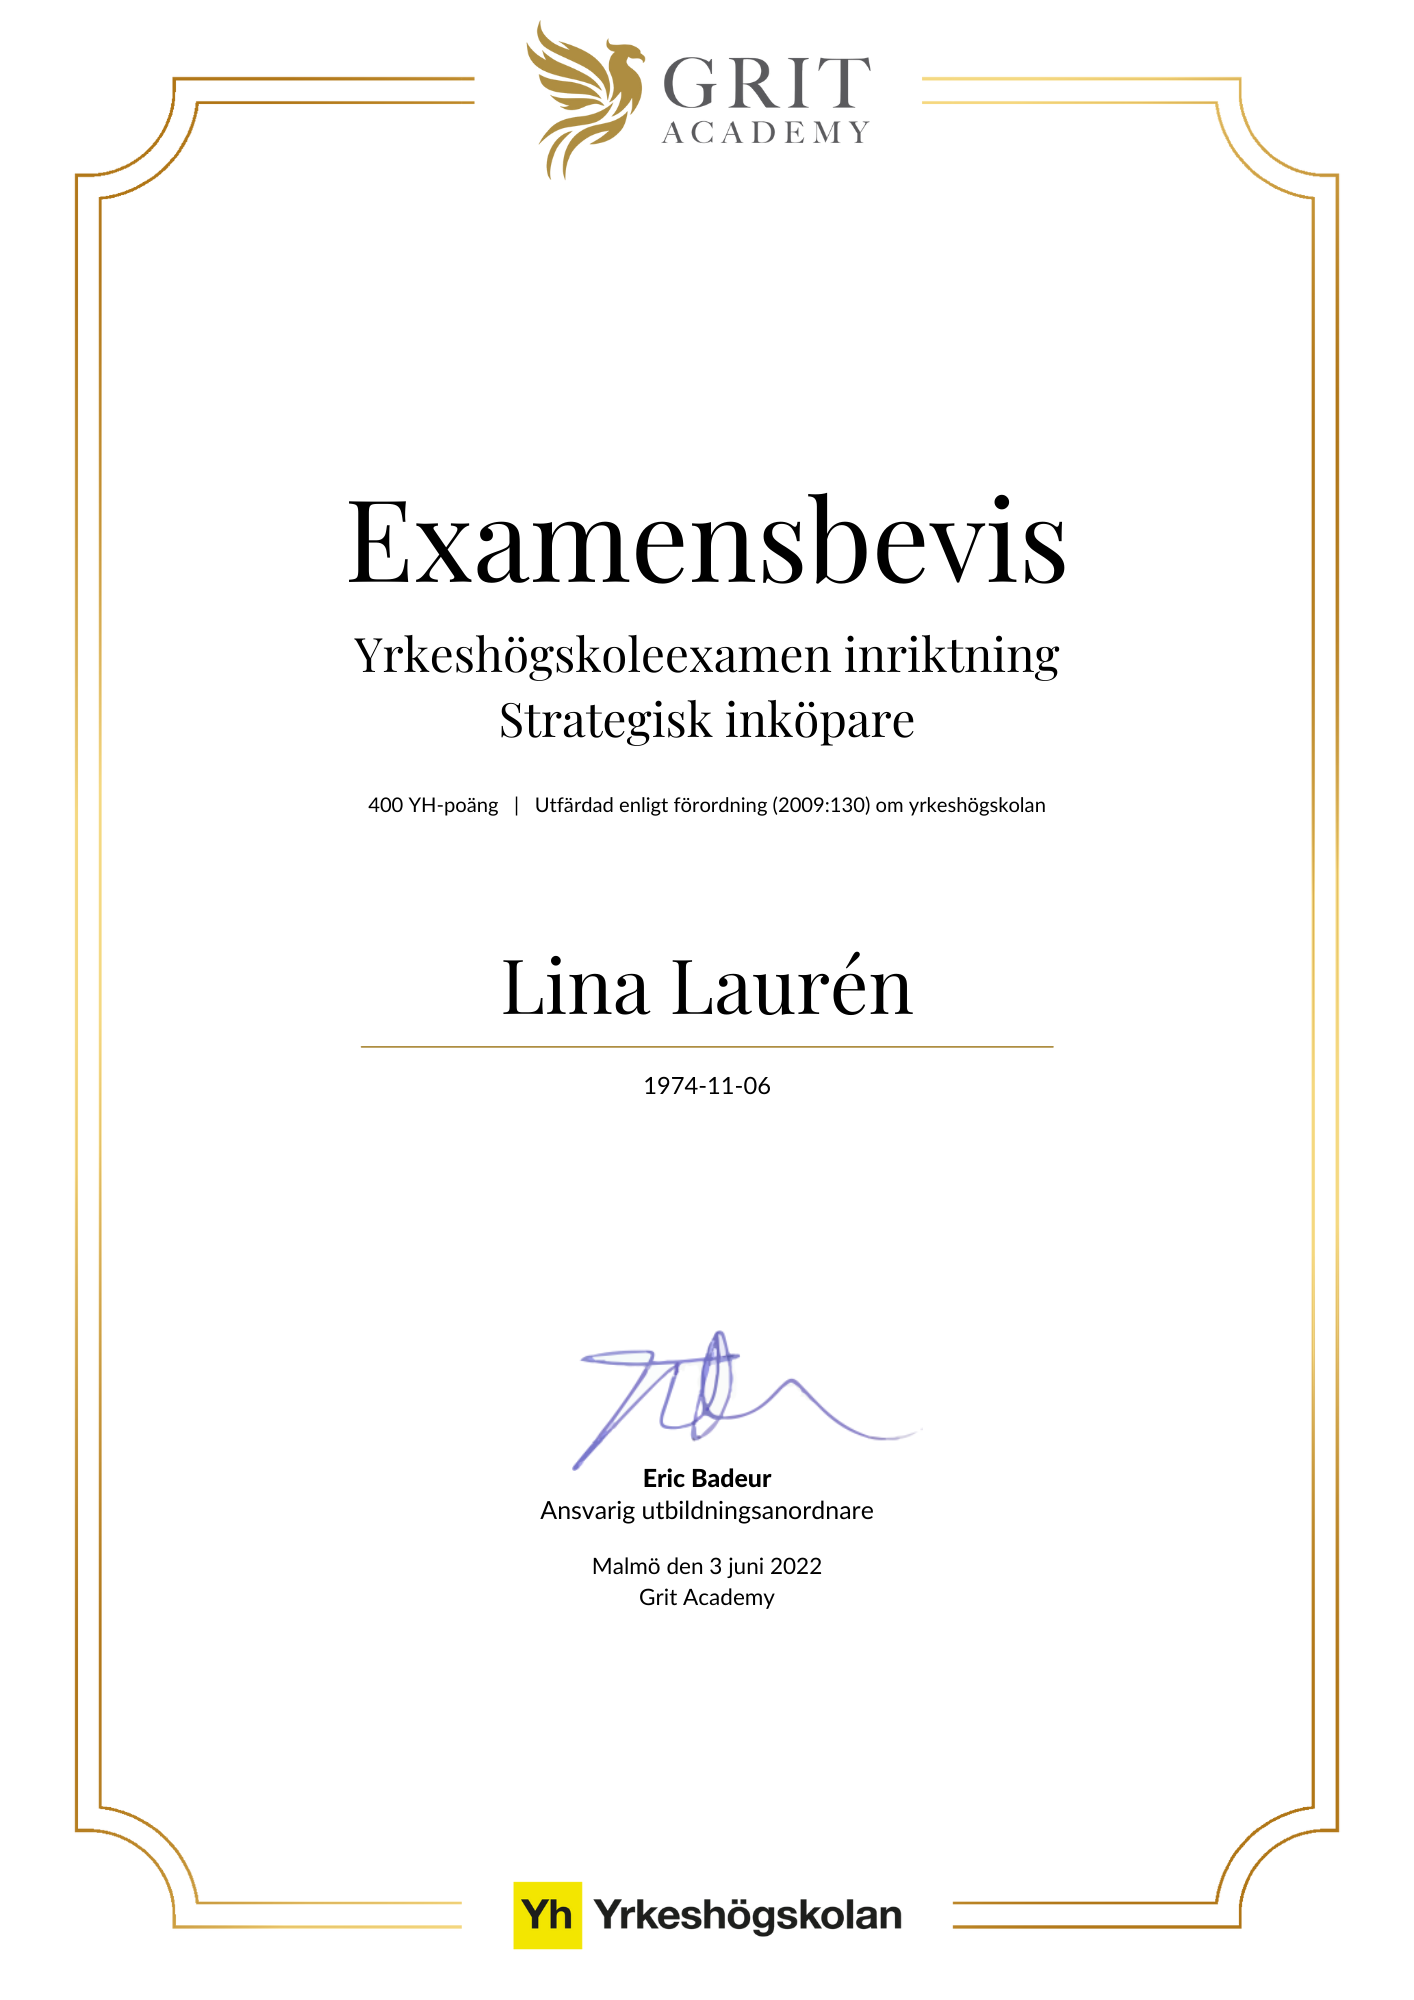 Examensbevis Lina Laurén - 1